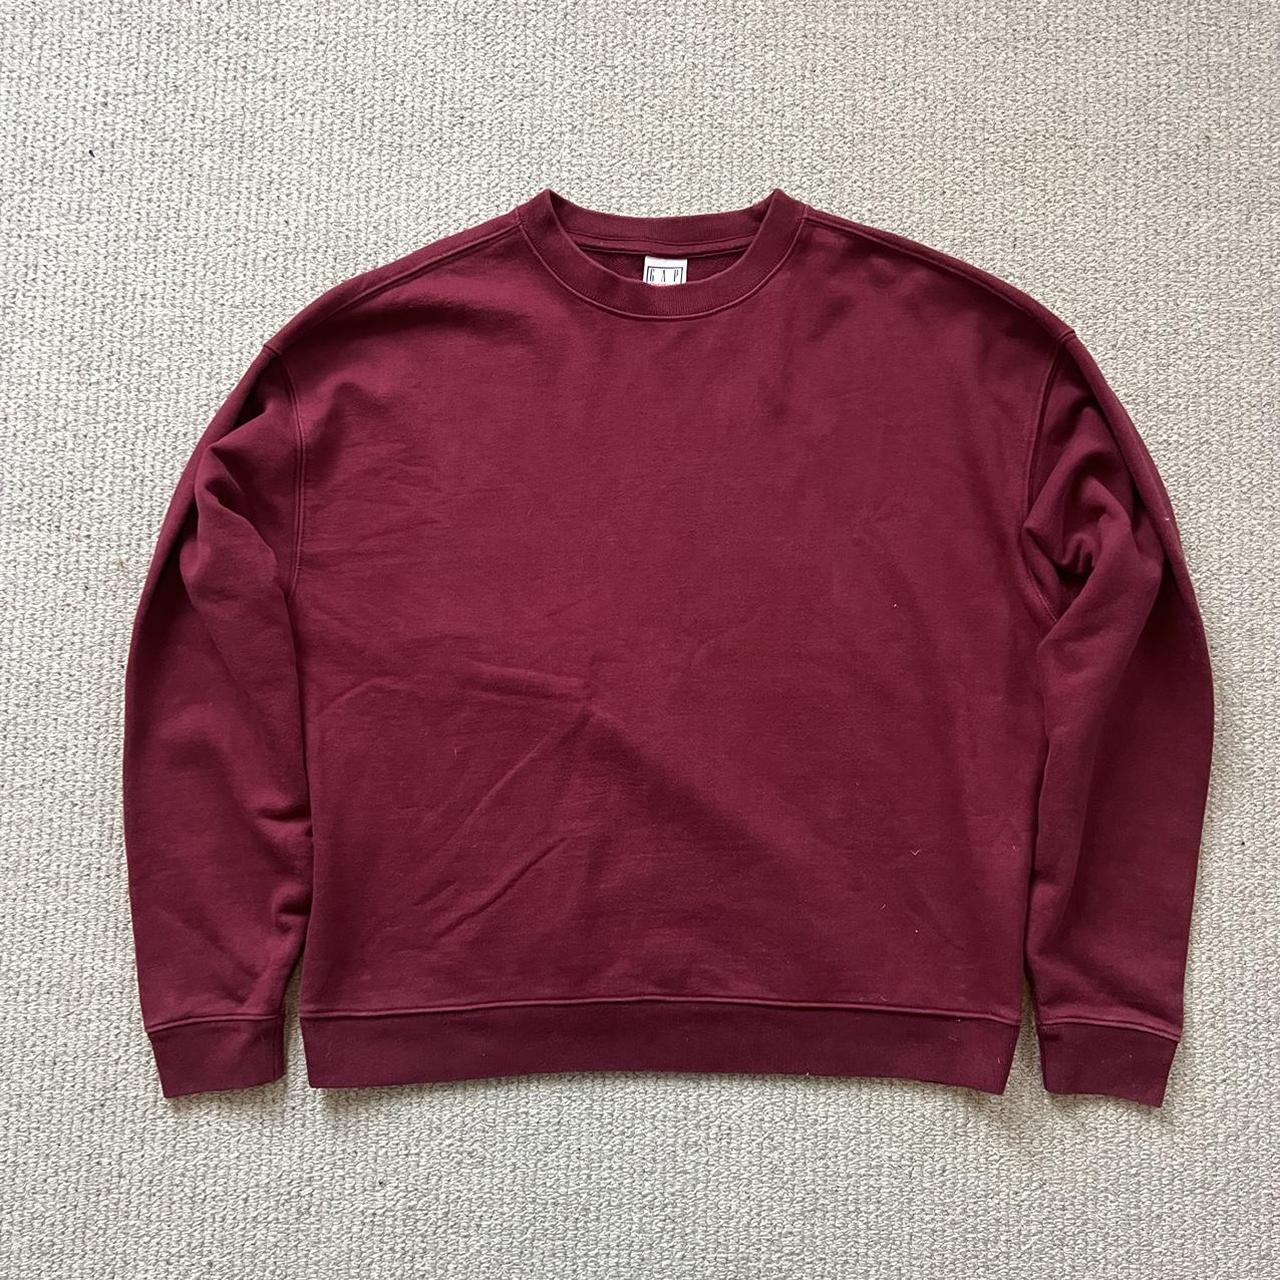 Gap Men's Burgundy Sweatshirt | Depop